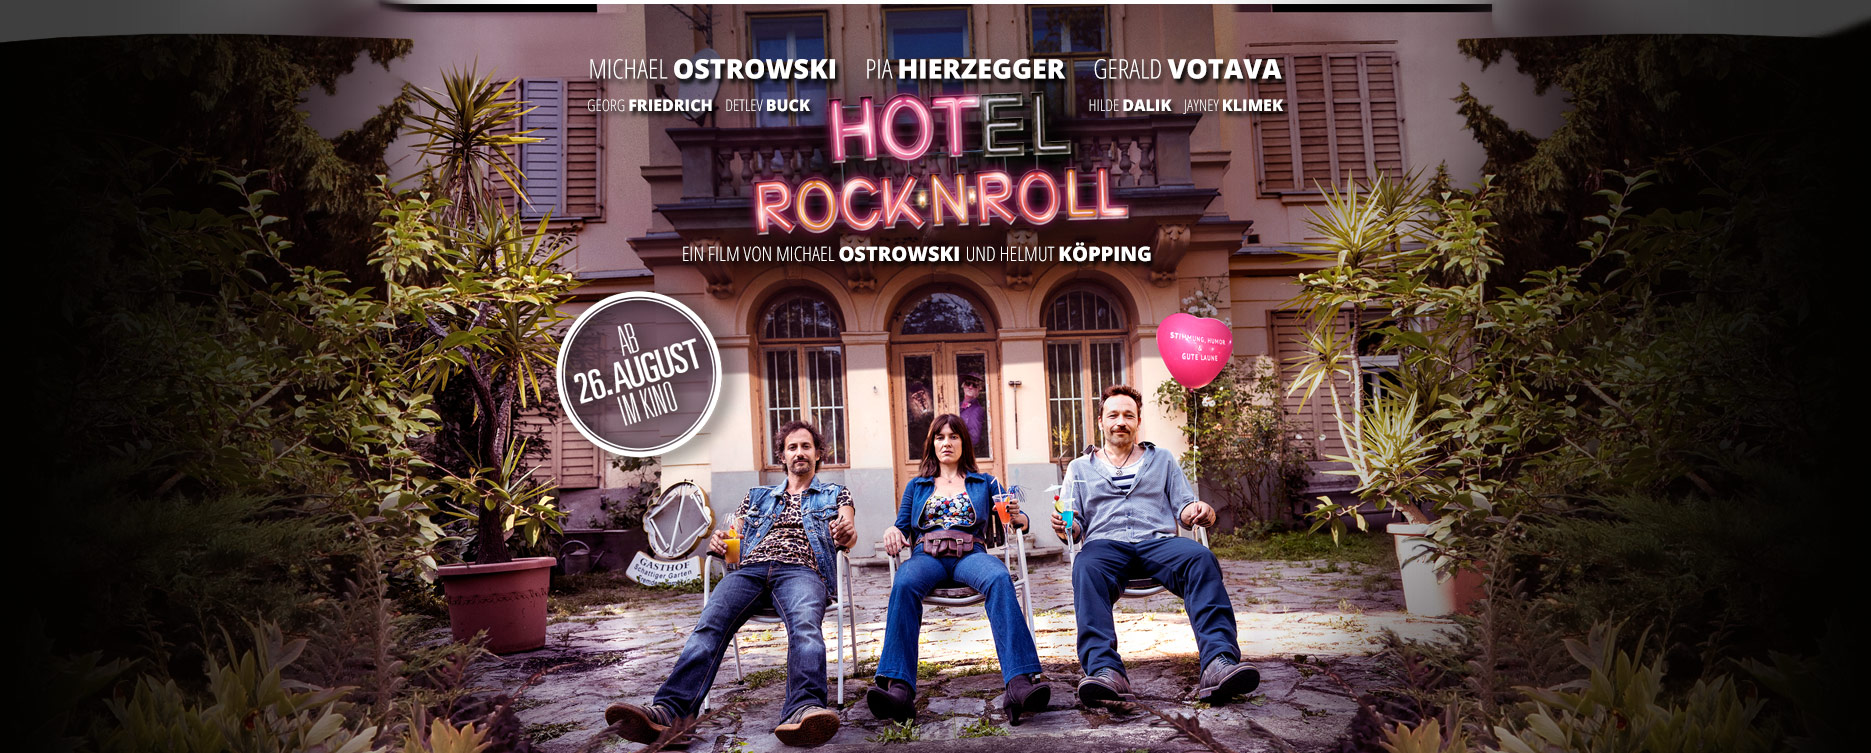 Hotel RocknRoll - Der Film